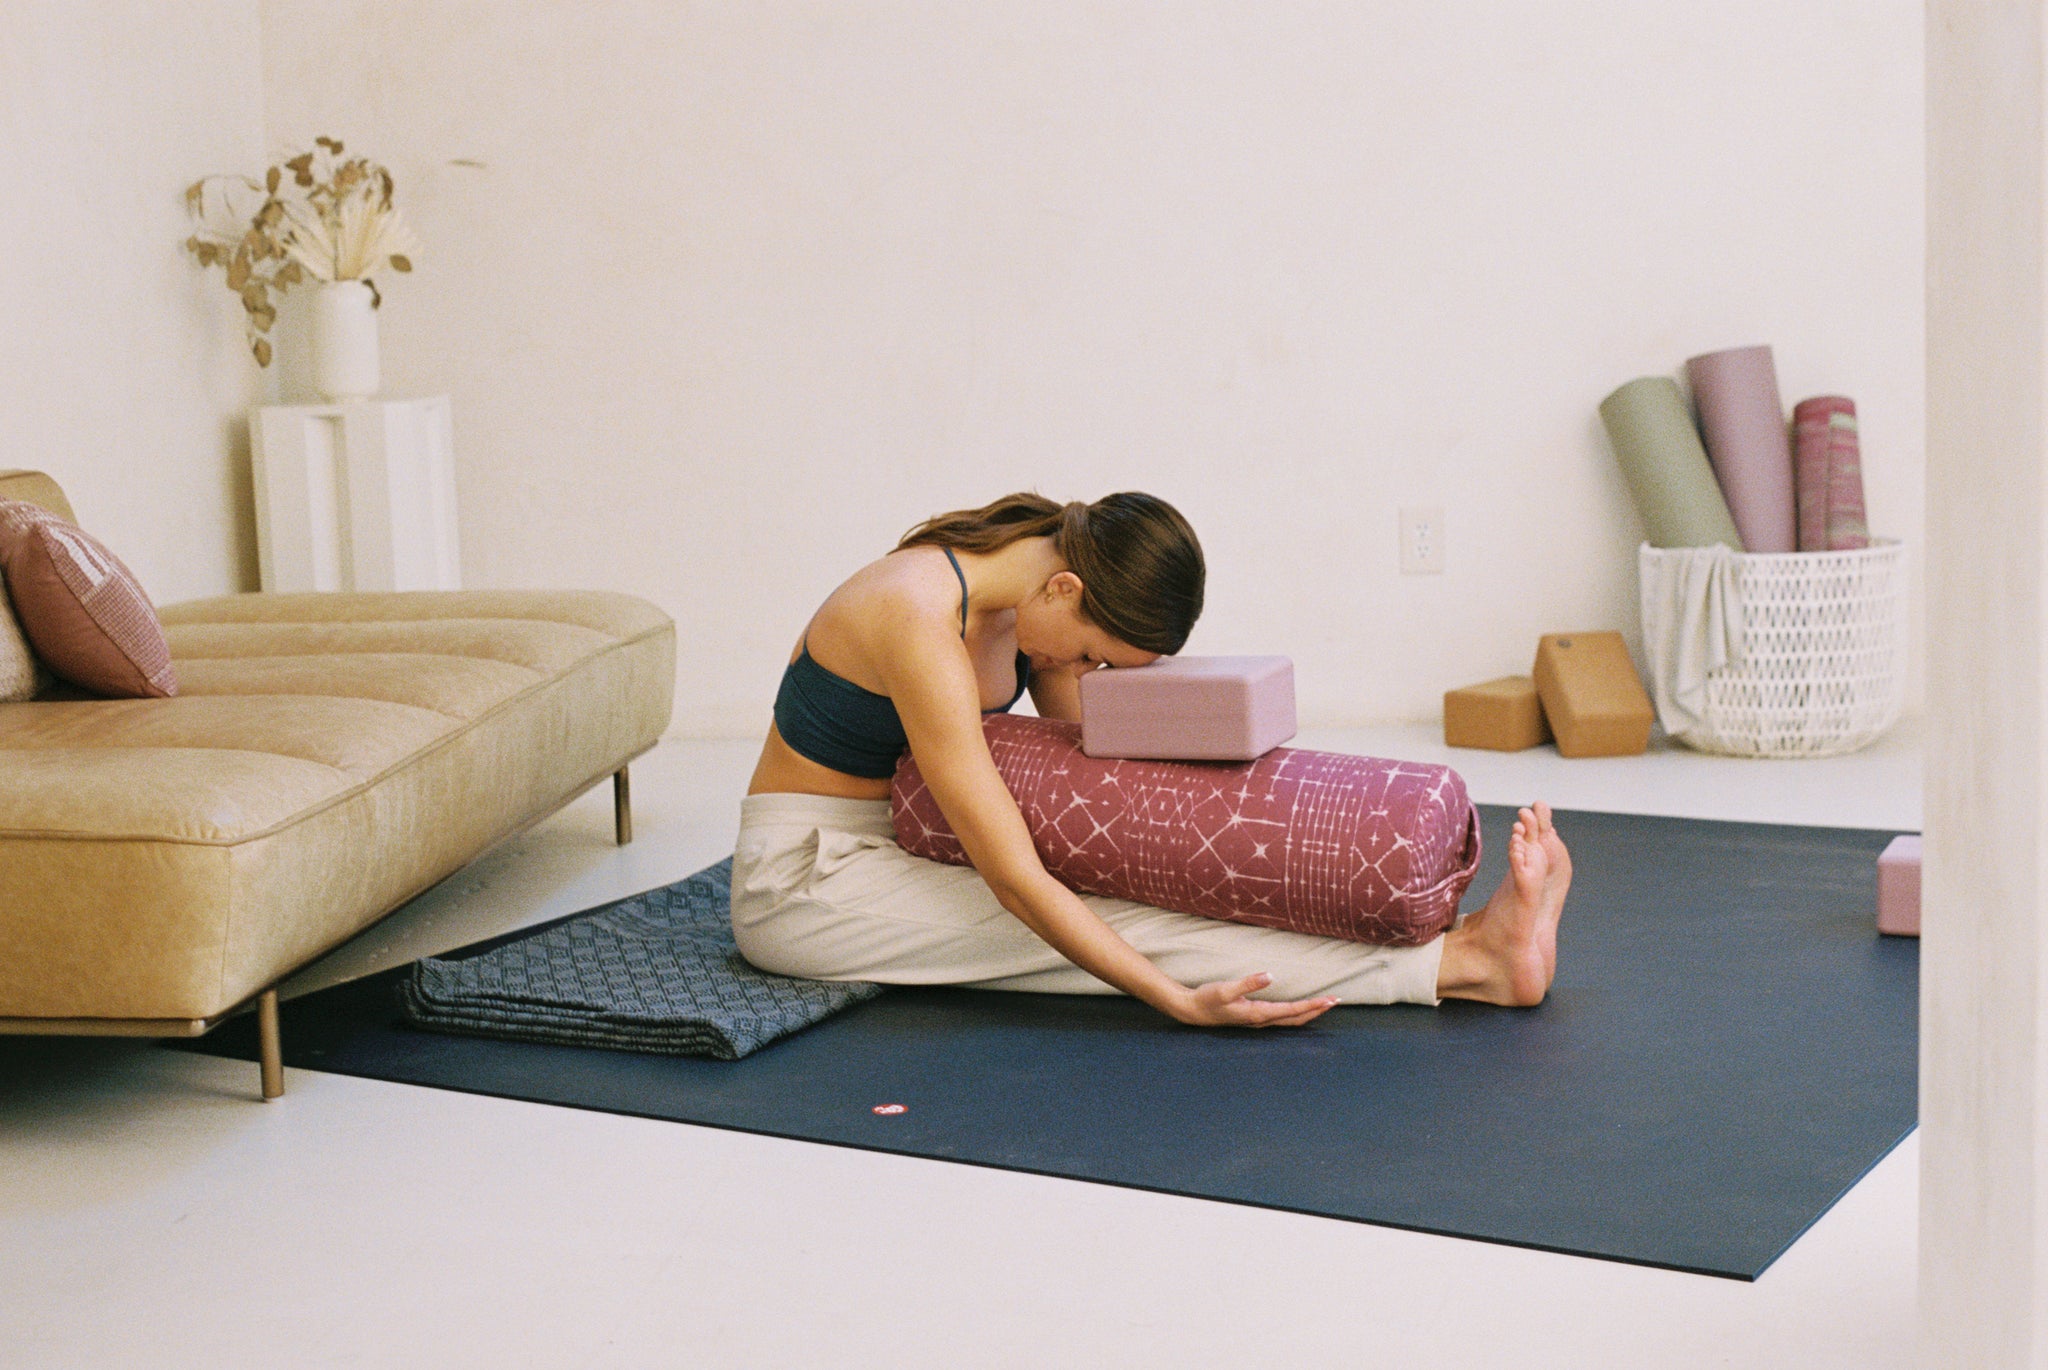 Rettangolare, snella o rotonda: qual è la spalliera per lo yoga più adatta  a voi?